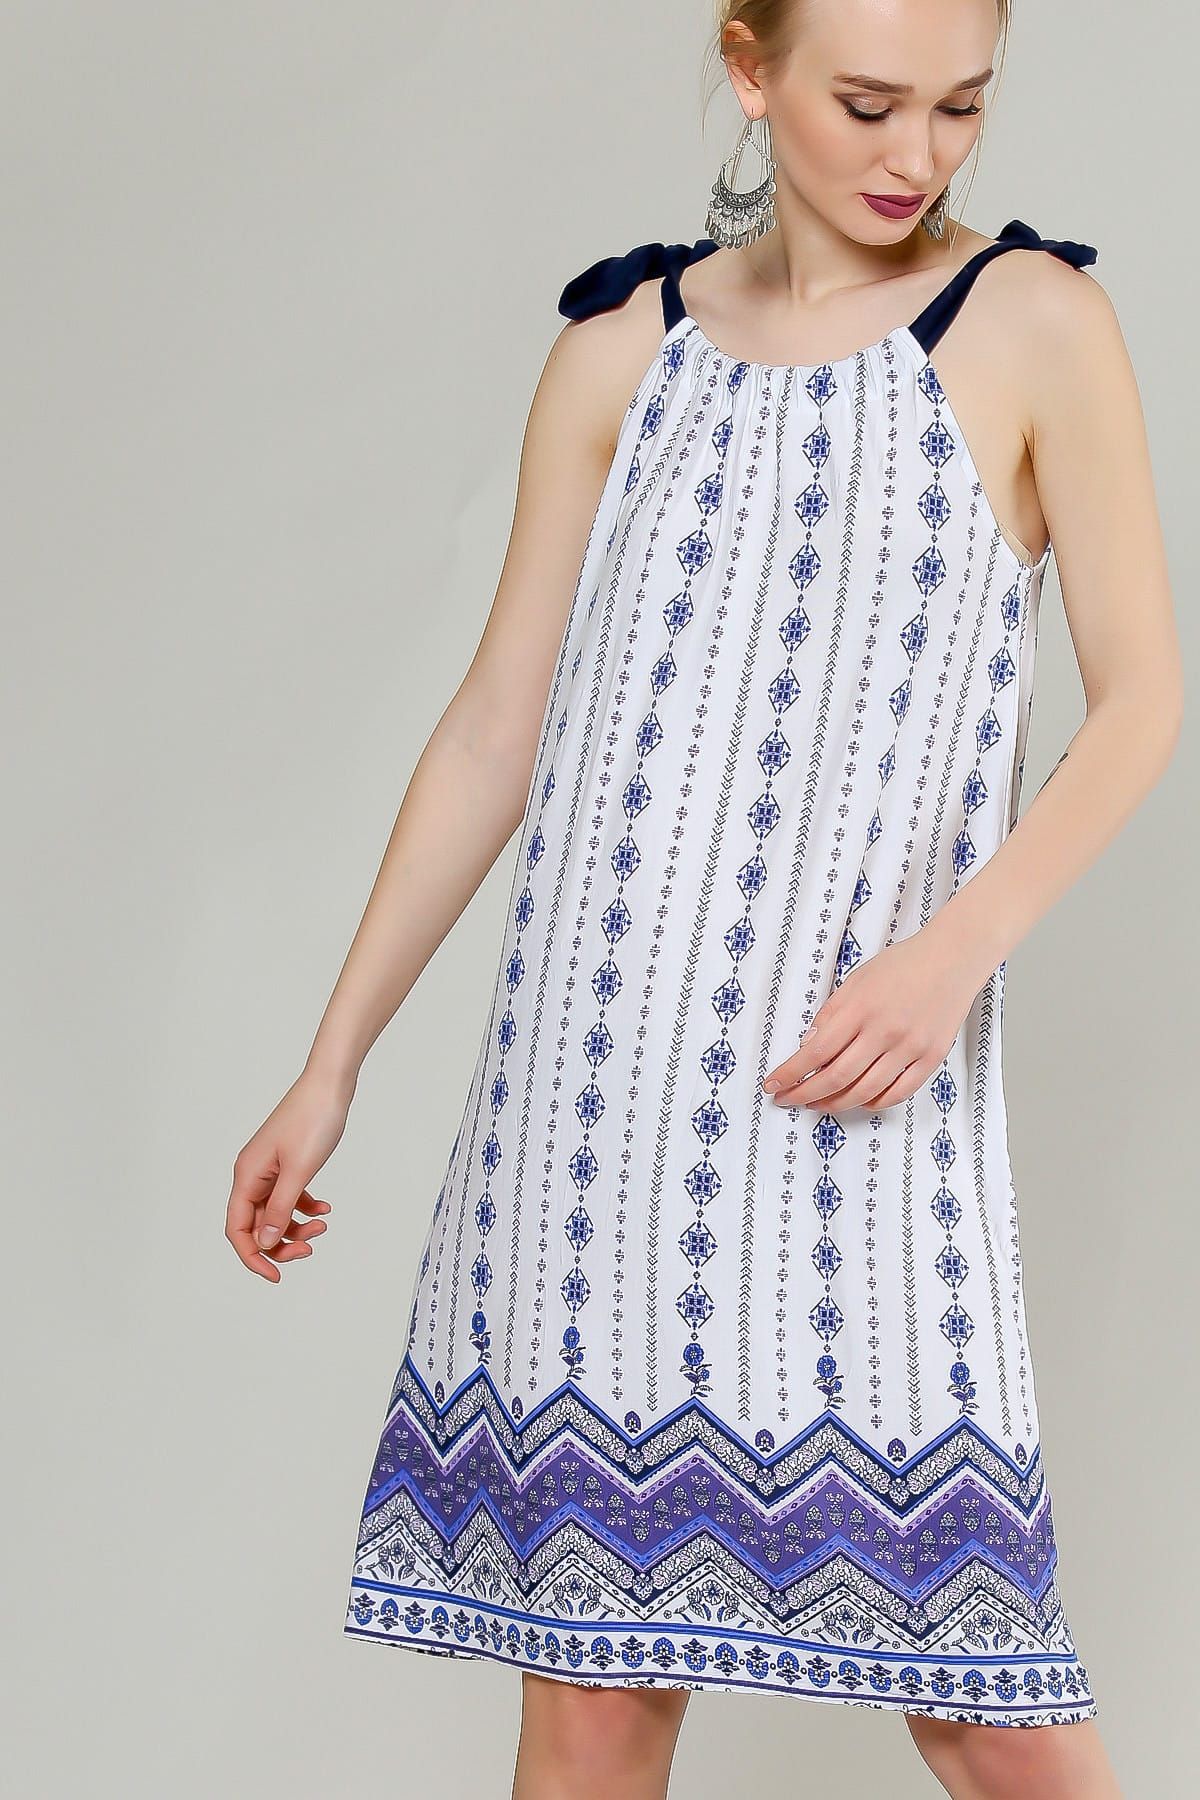 Chiccy Kadın Beyaz Floral Tribal Desenli Etek Ucu Panolu Askılı Elbise C10160000El98427